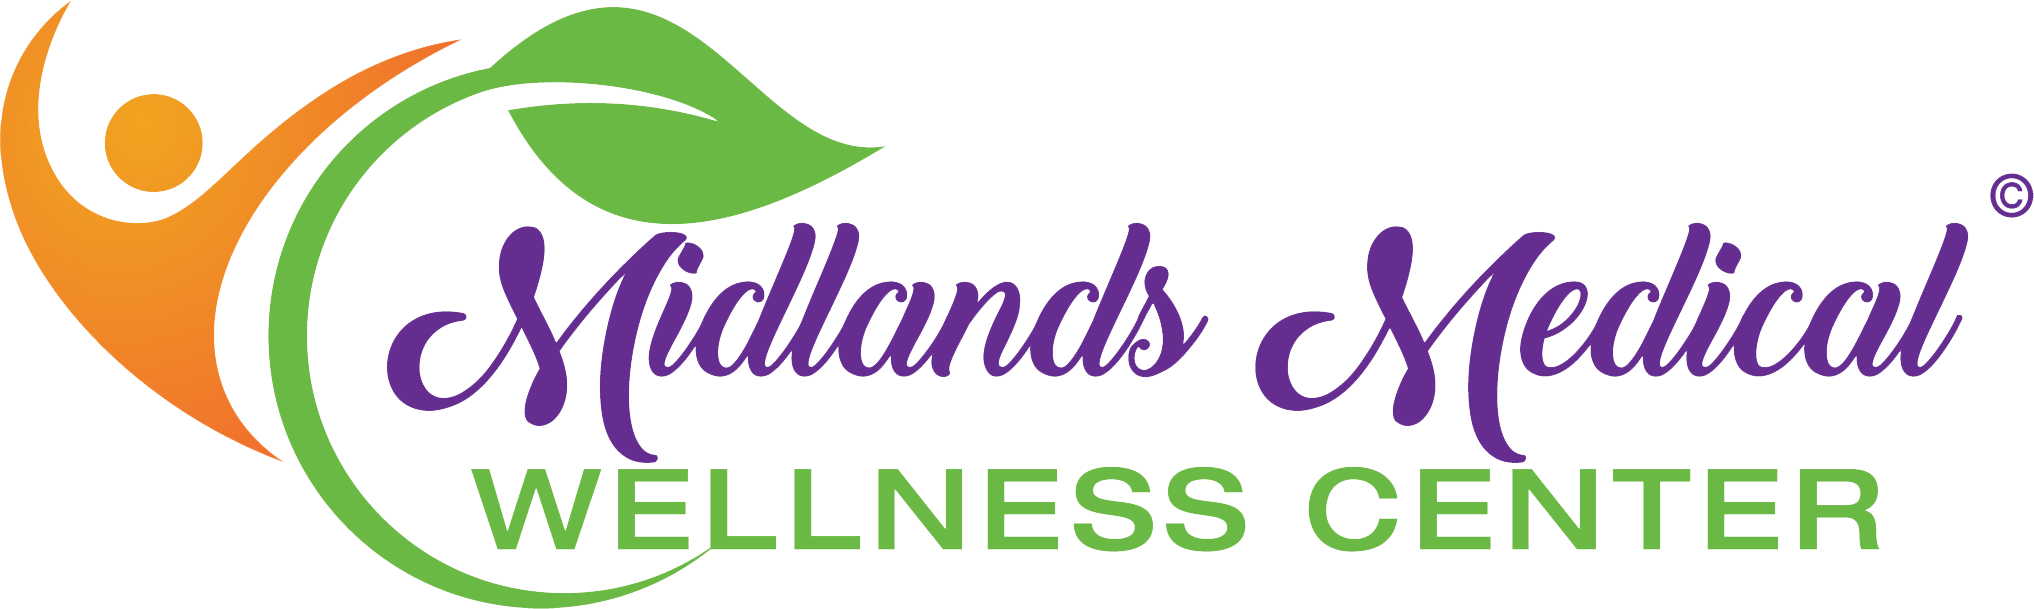 Midlands Medical Wellness Center - Dr. Rhoe